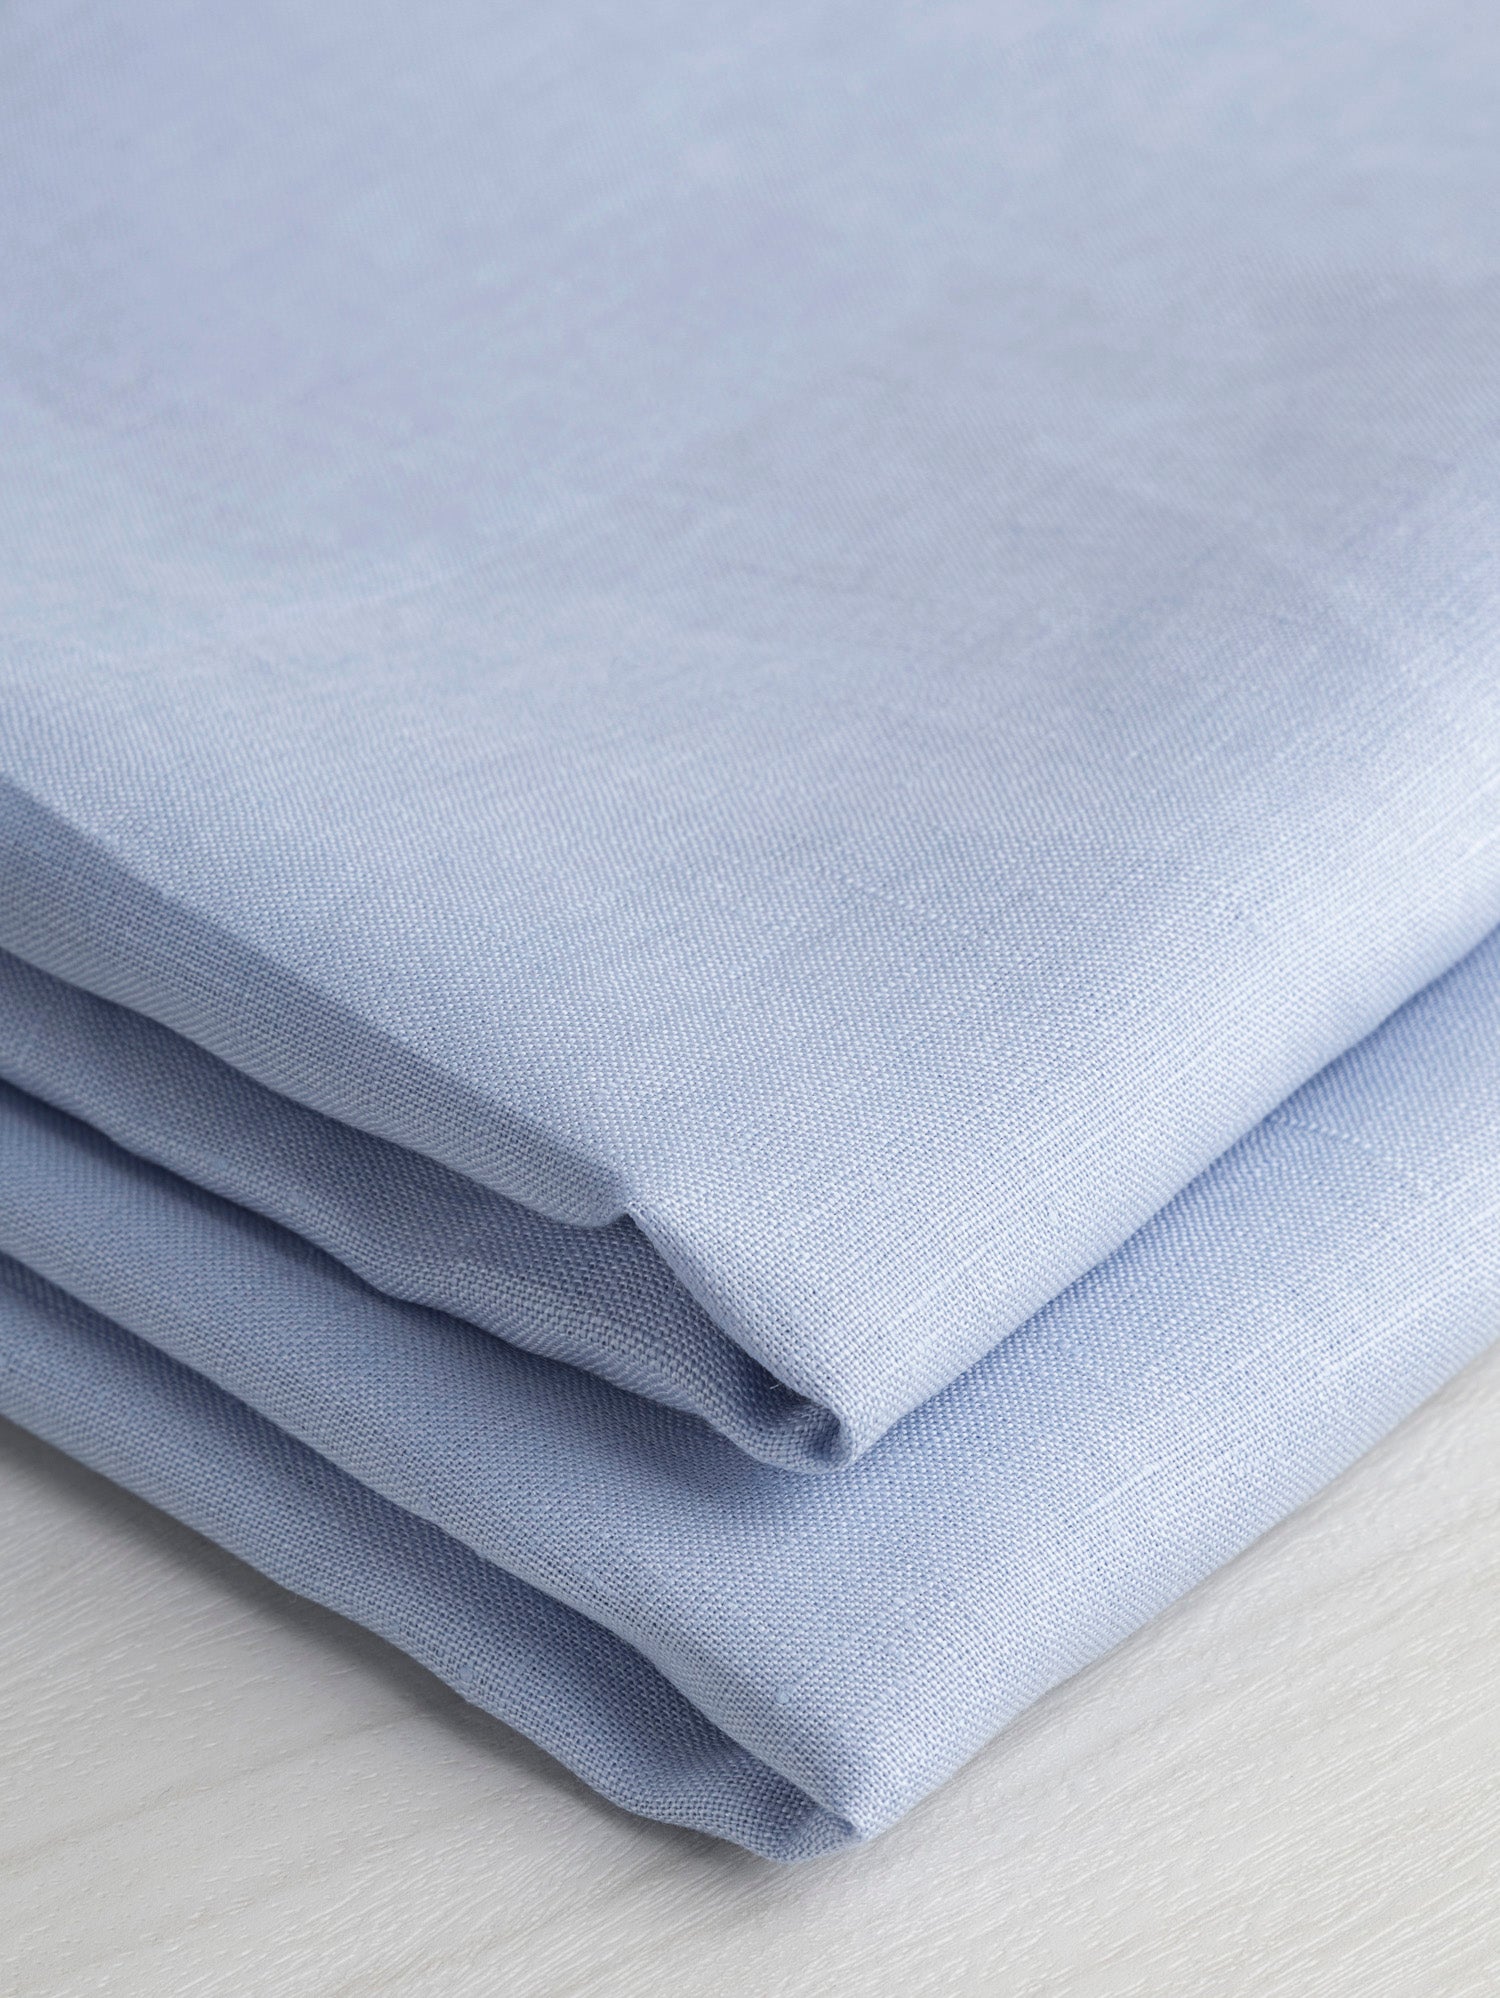 Lightweight European Linen - Powder Blue | Core Fabrics